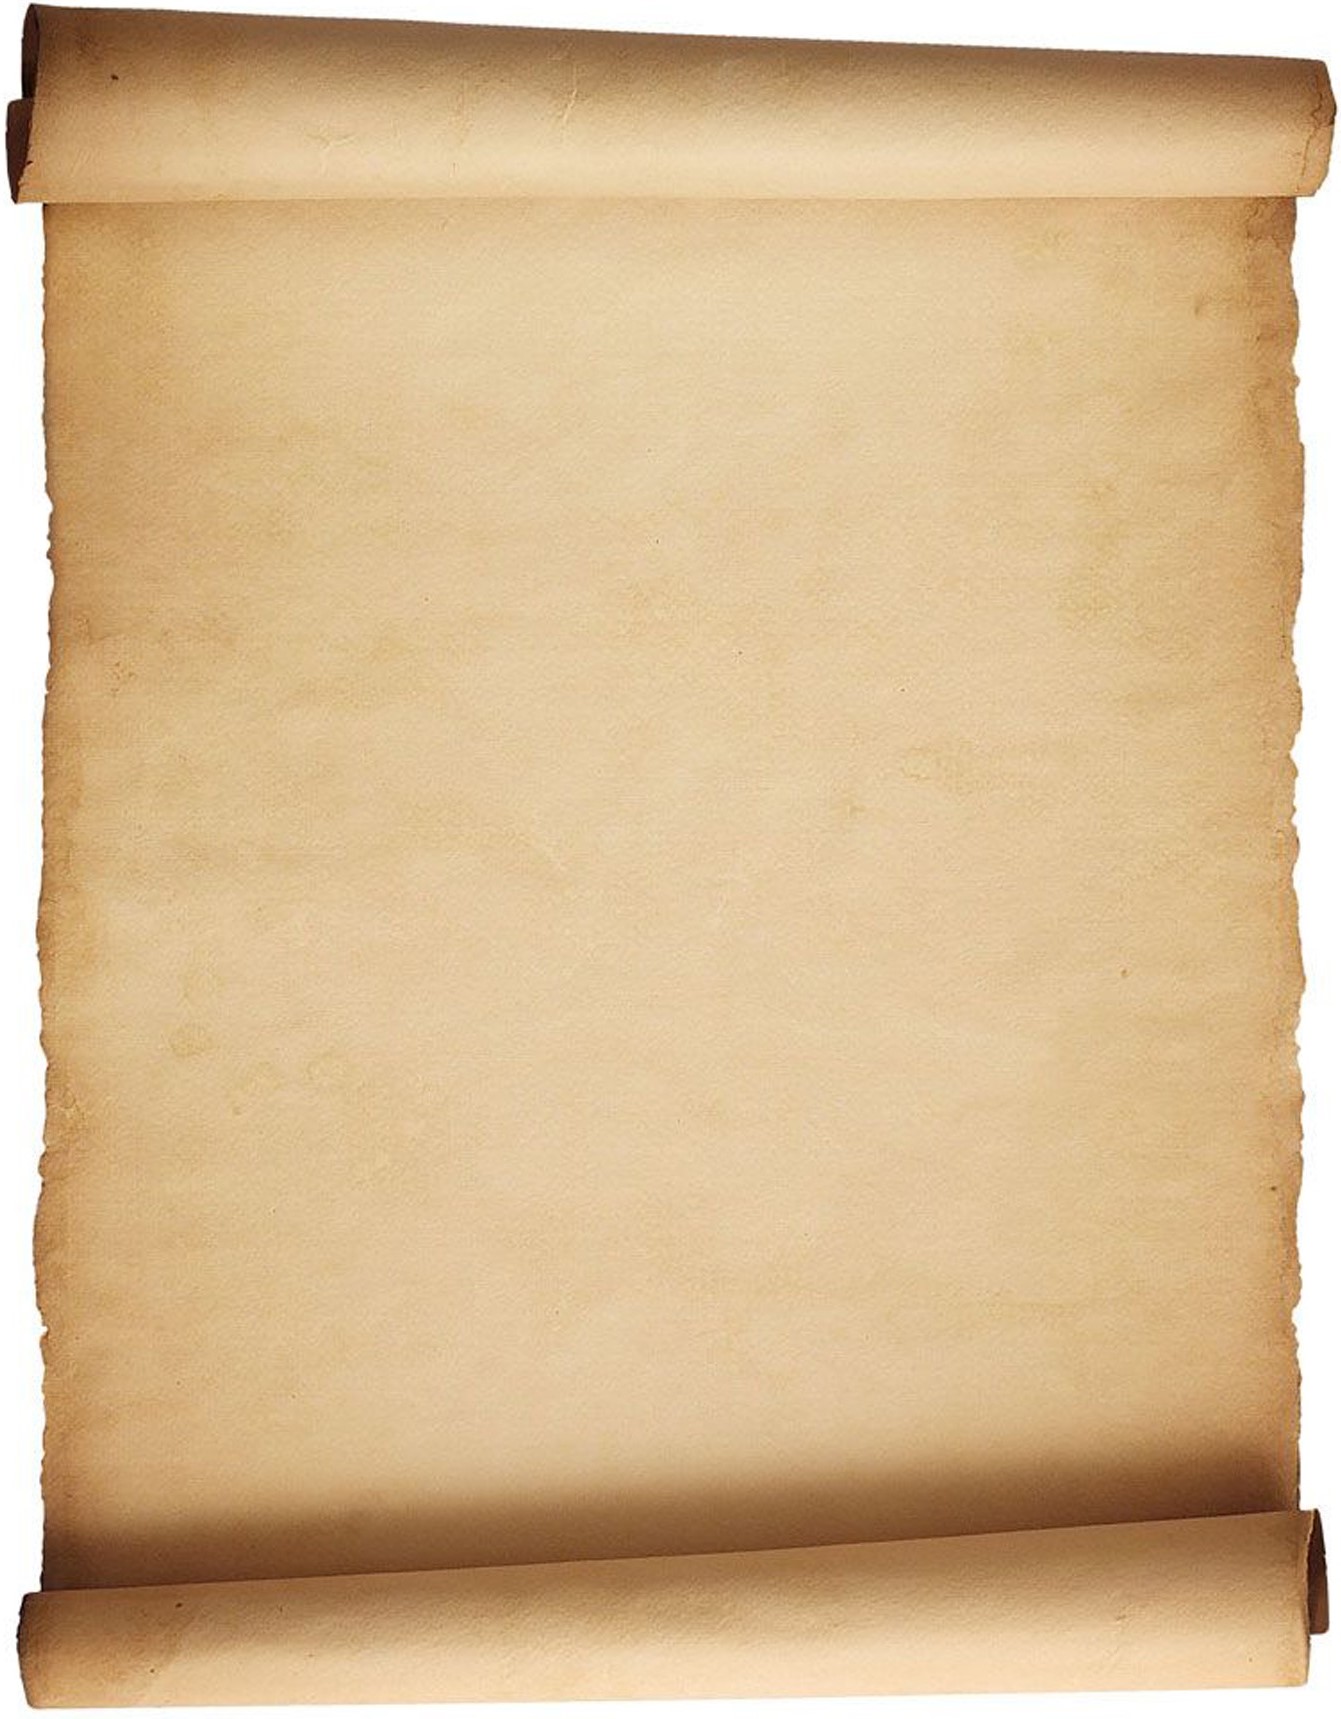 paper clipart parchment paper